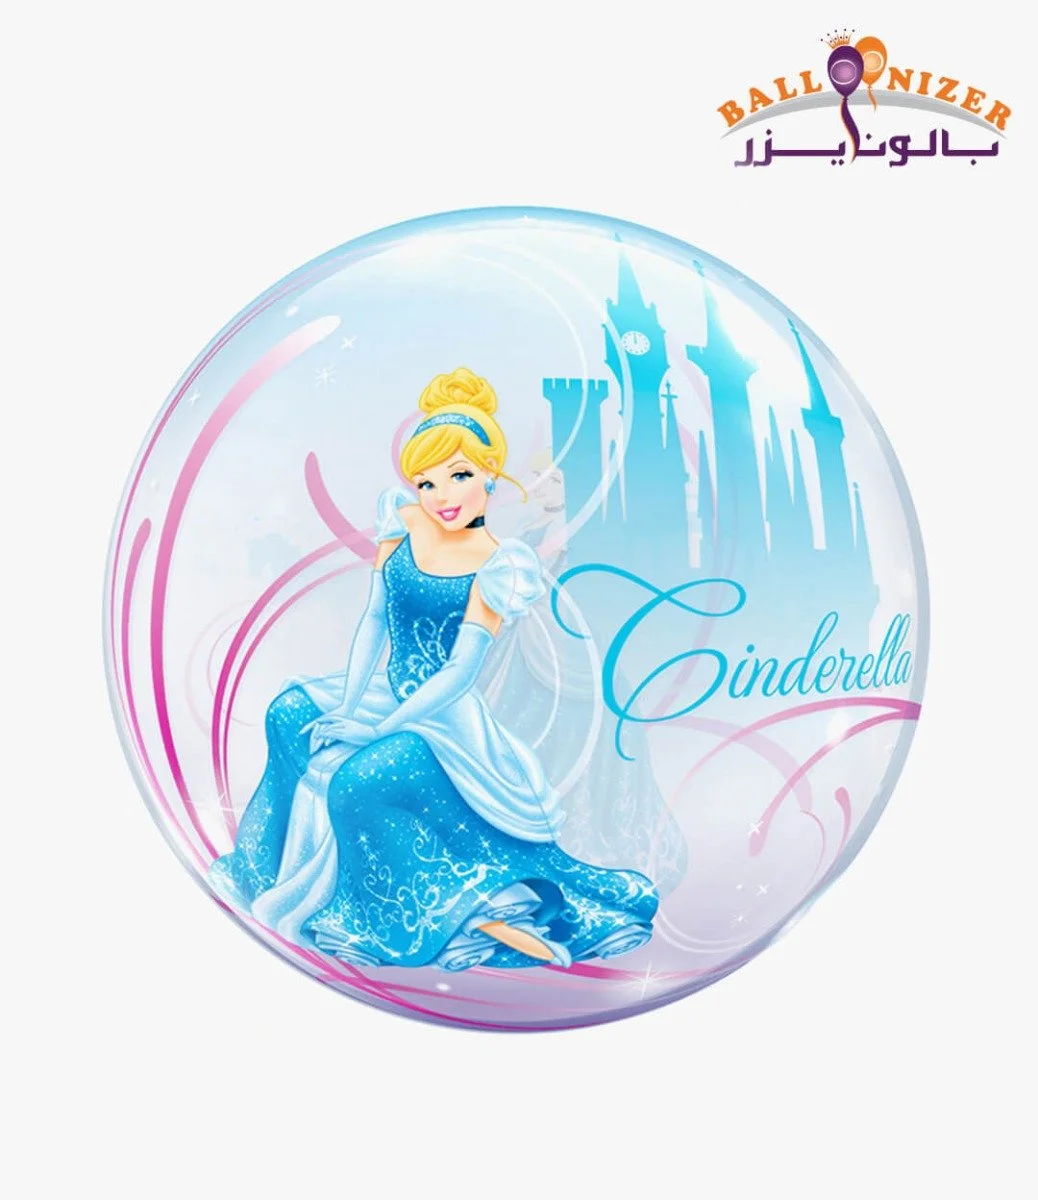 Cindrella bubbles balloon